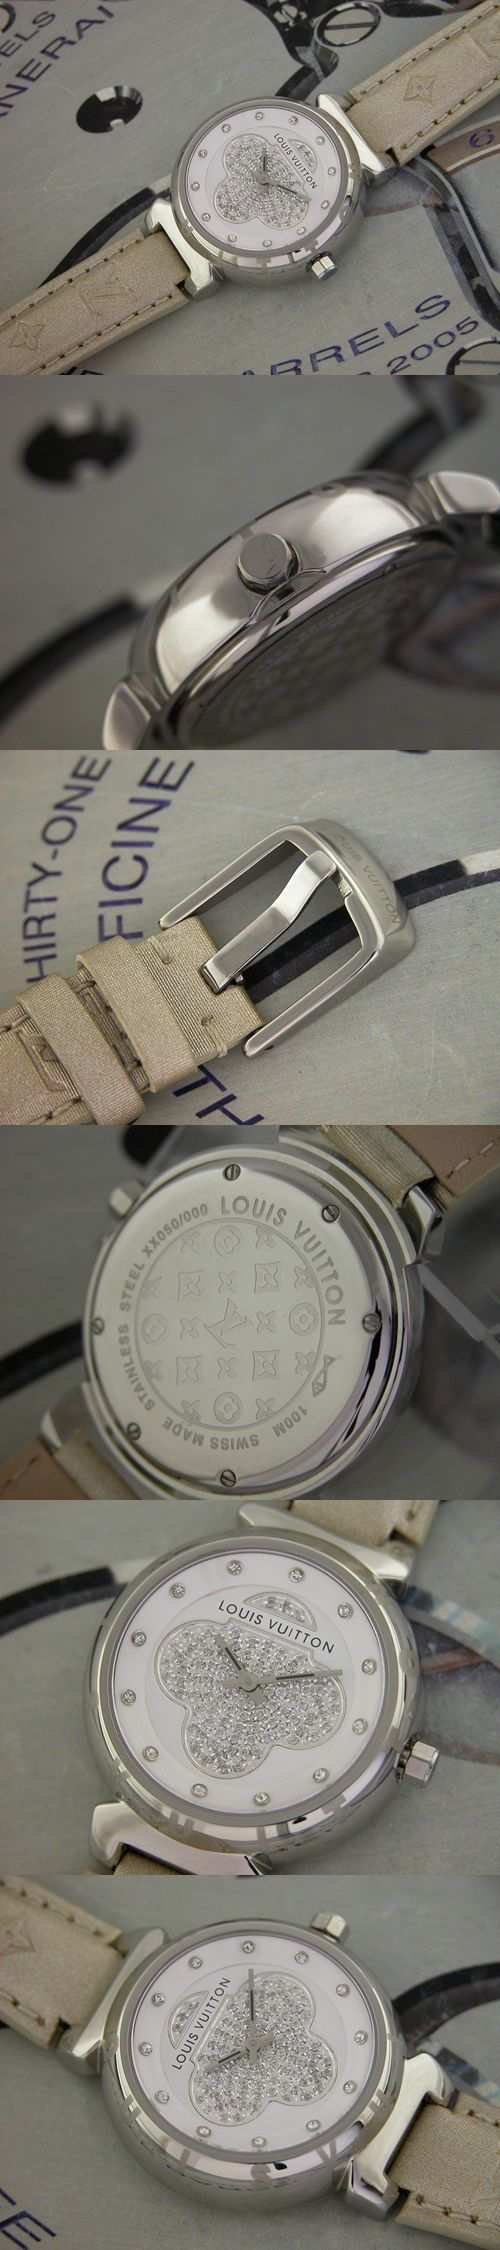 おしゃれなブランド時計がルイヴィトン-タンブール-LOUIS VUITTON-LV00025J-女性用を提供します.